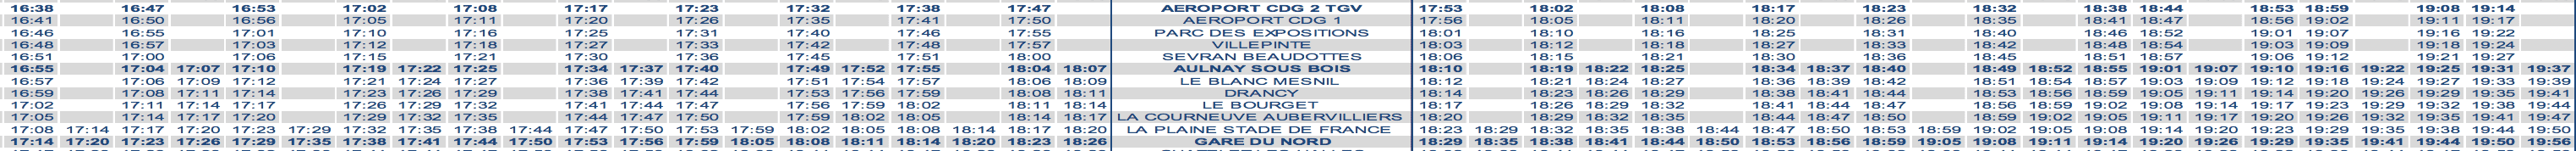 RER B Train Timetable CDG to Paris Evening Weekday 2020 Strike